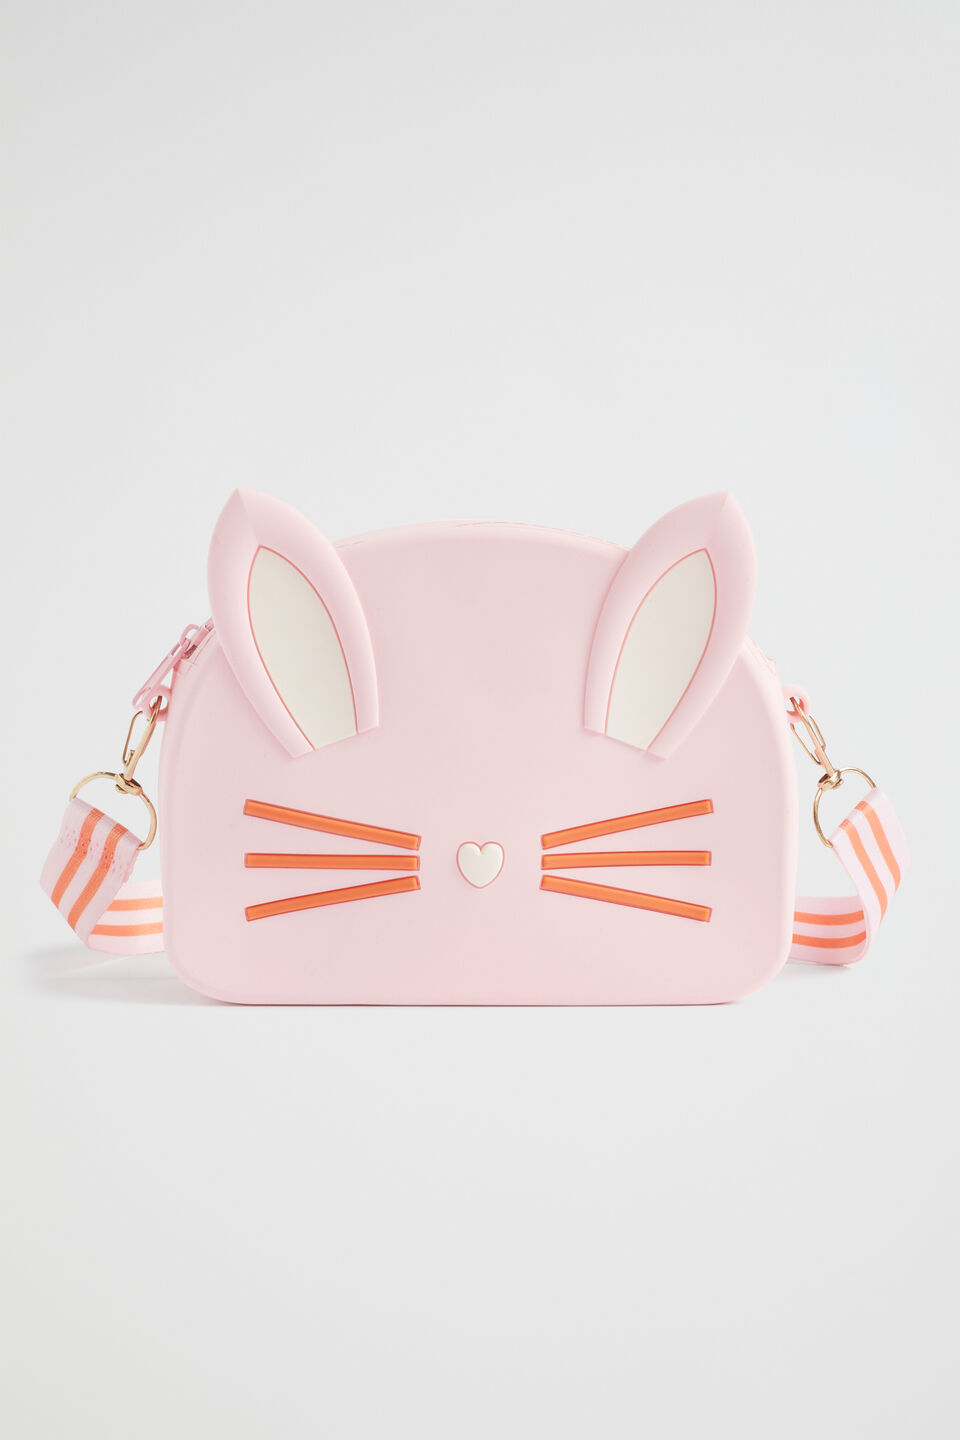 Bunny Silicone Bag  Multi